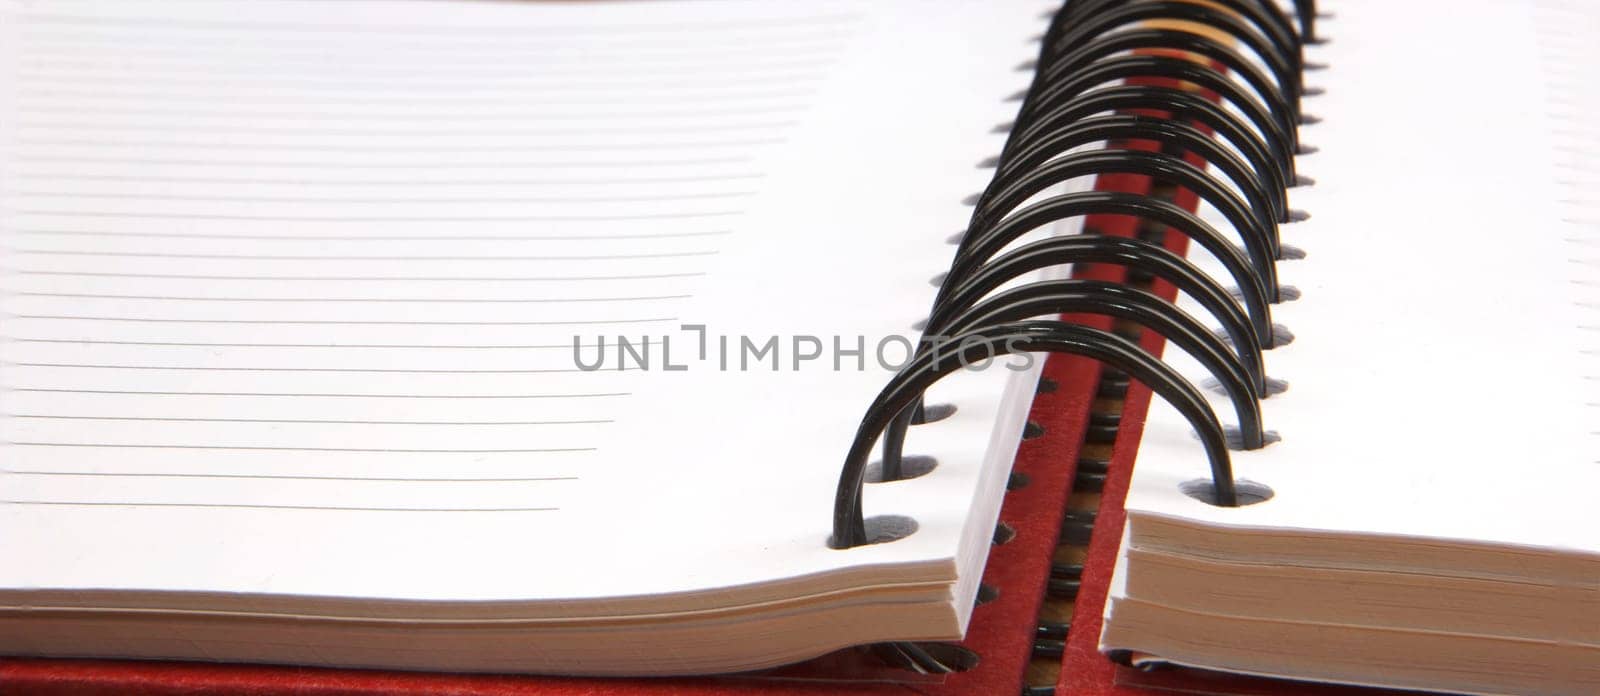 Close up of an open spiral notebook. Banner view